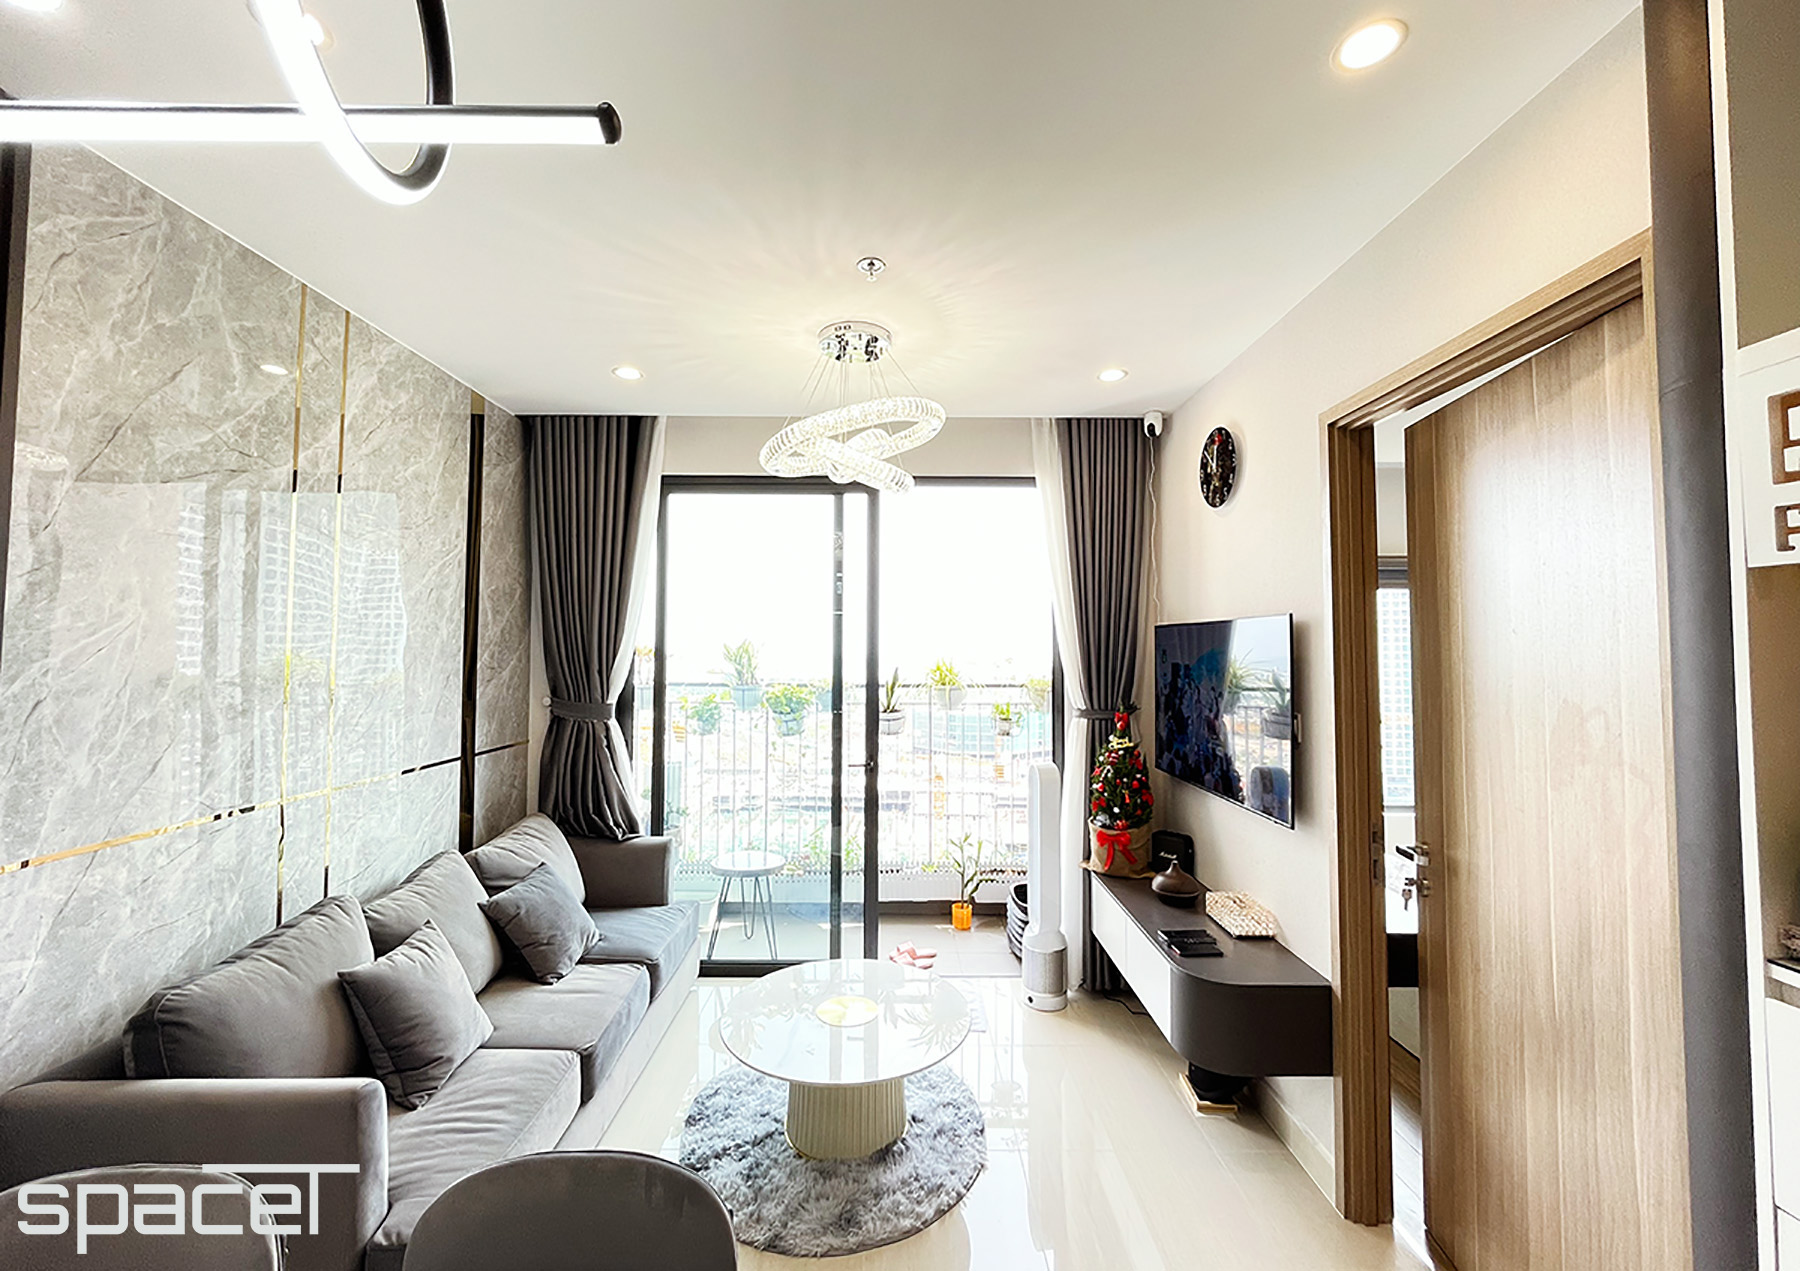 Phòng khách, phong cách Hiện đại Modern, hoàn thiện nội thất, căn hộ The Origami Vinhomes Quận 9